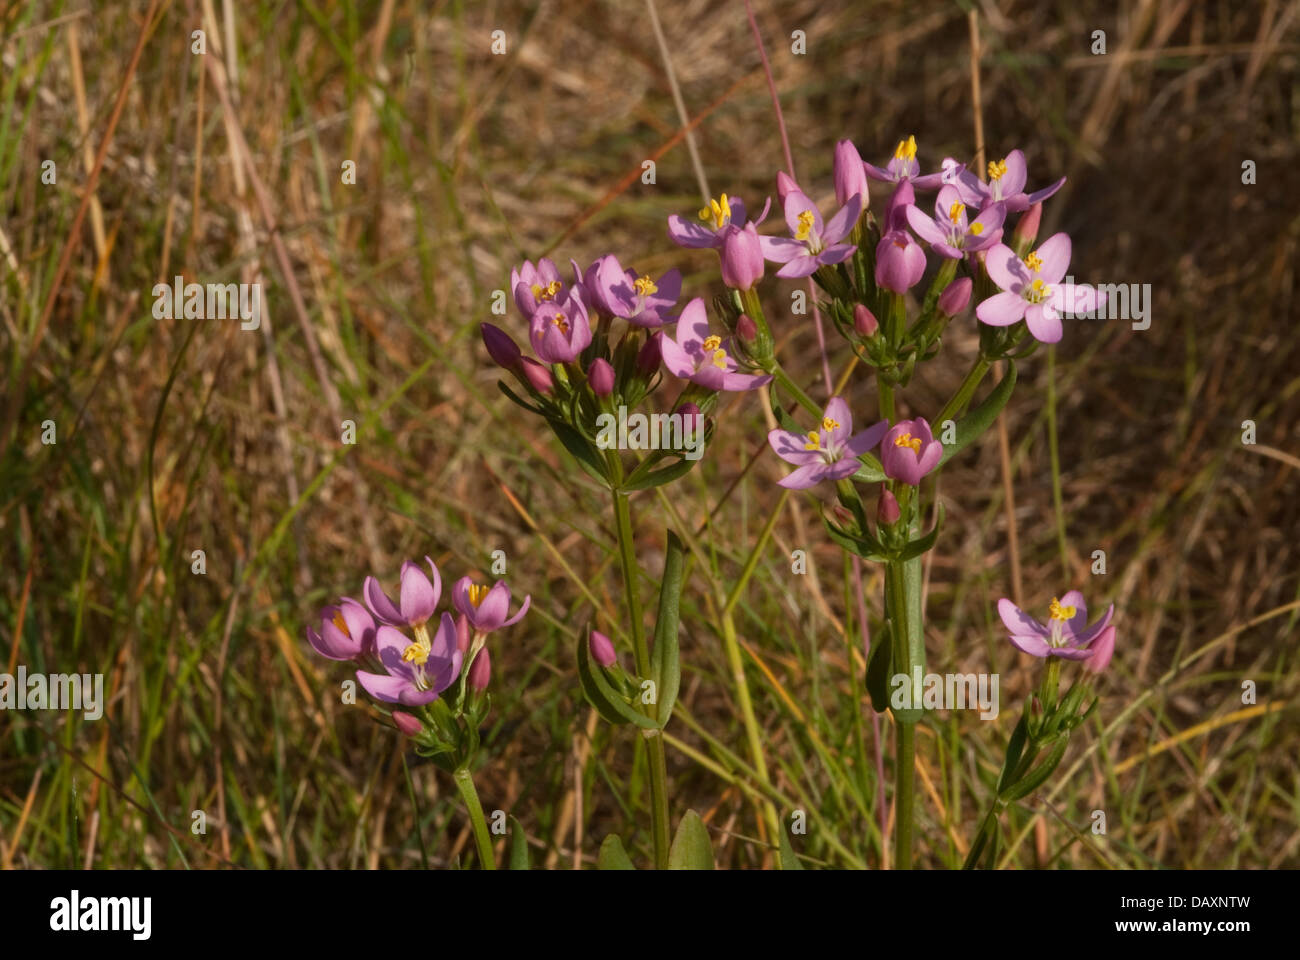 Common Centaury (Centuarium erythraea) in flower Stock Photo